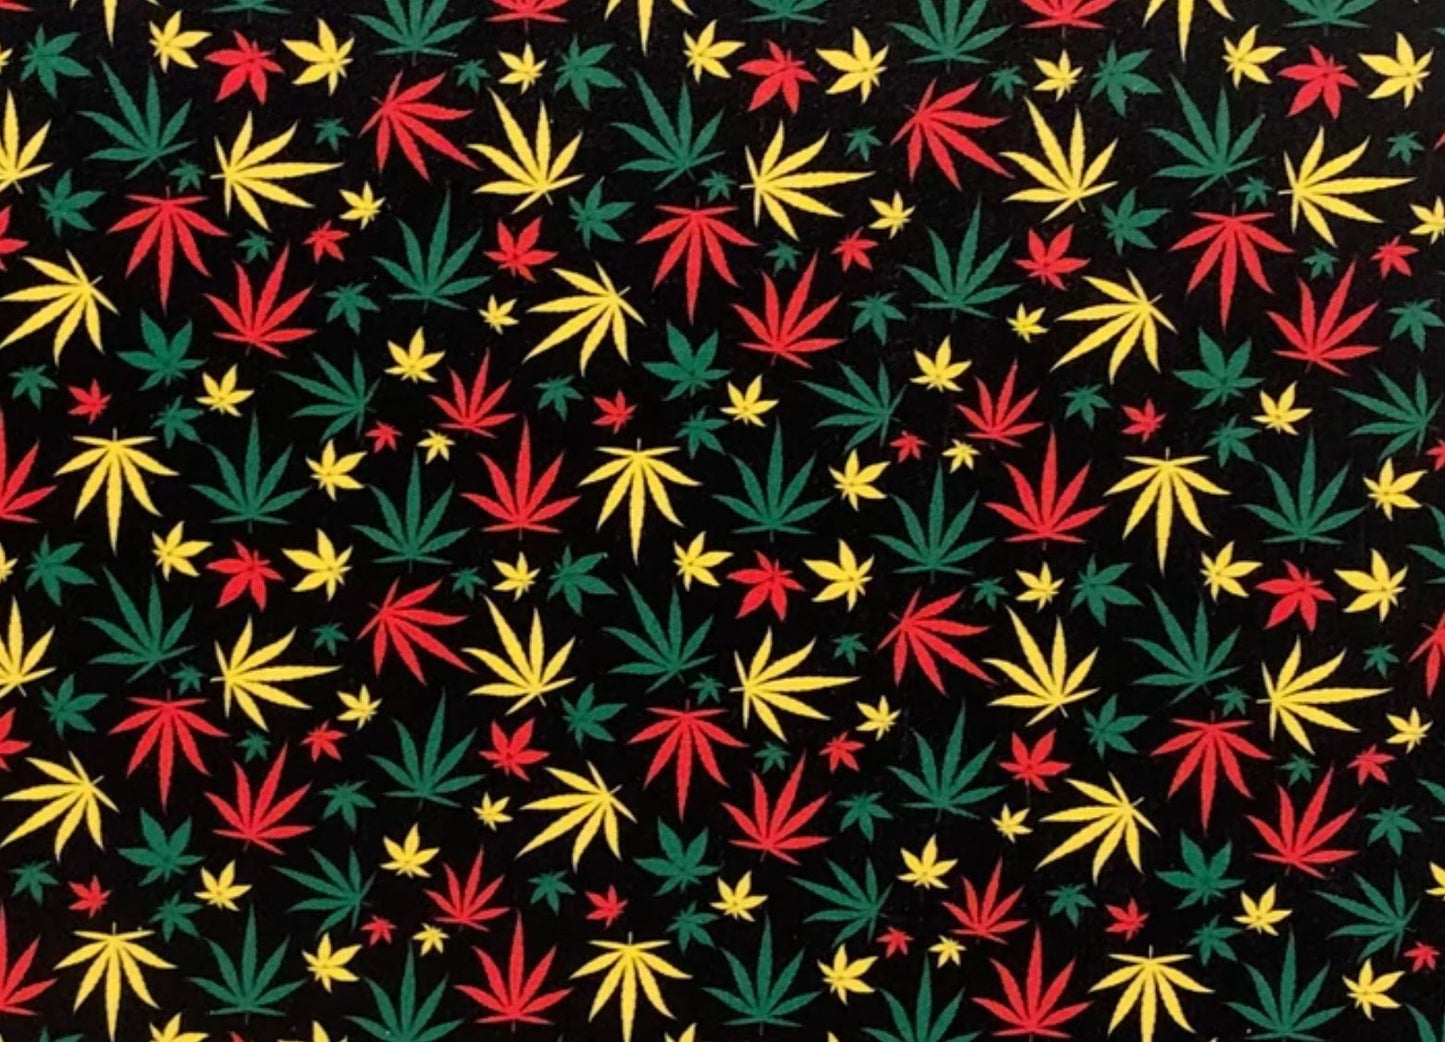 R.Y.G. Cannabis Leaf- Printed Pattern Designs (Sets)